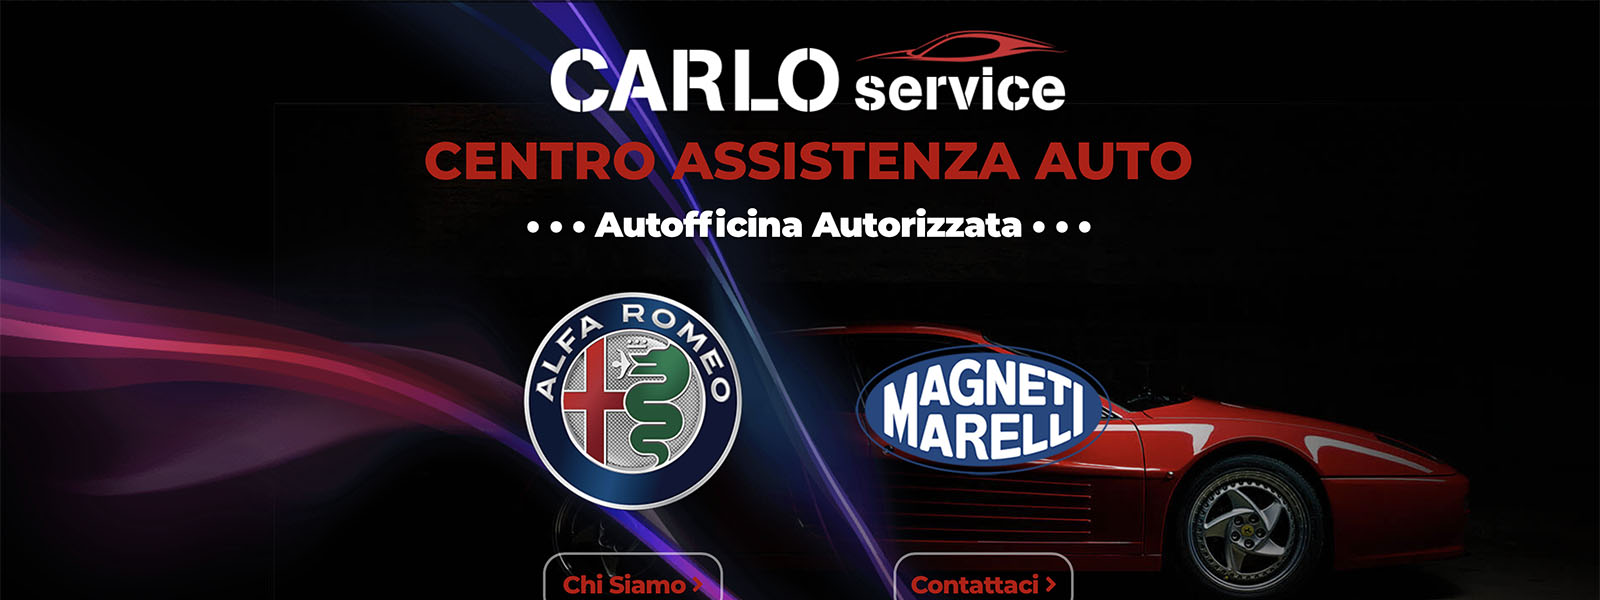 Sito Web Autofficina Carlo Service